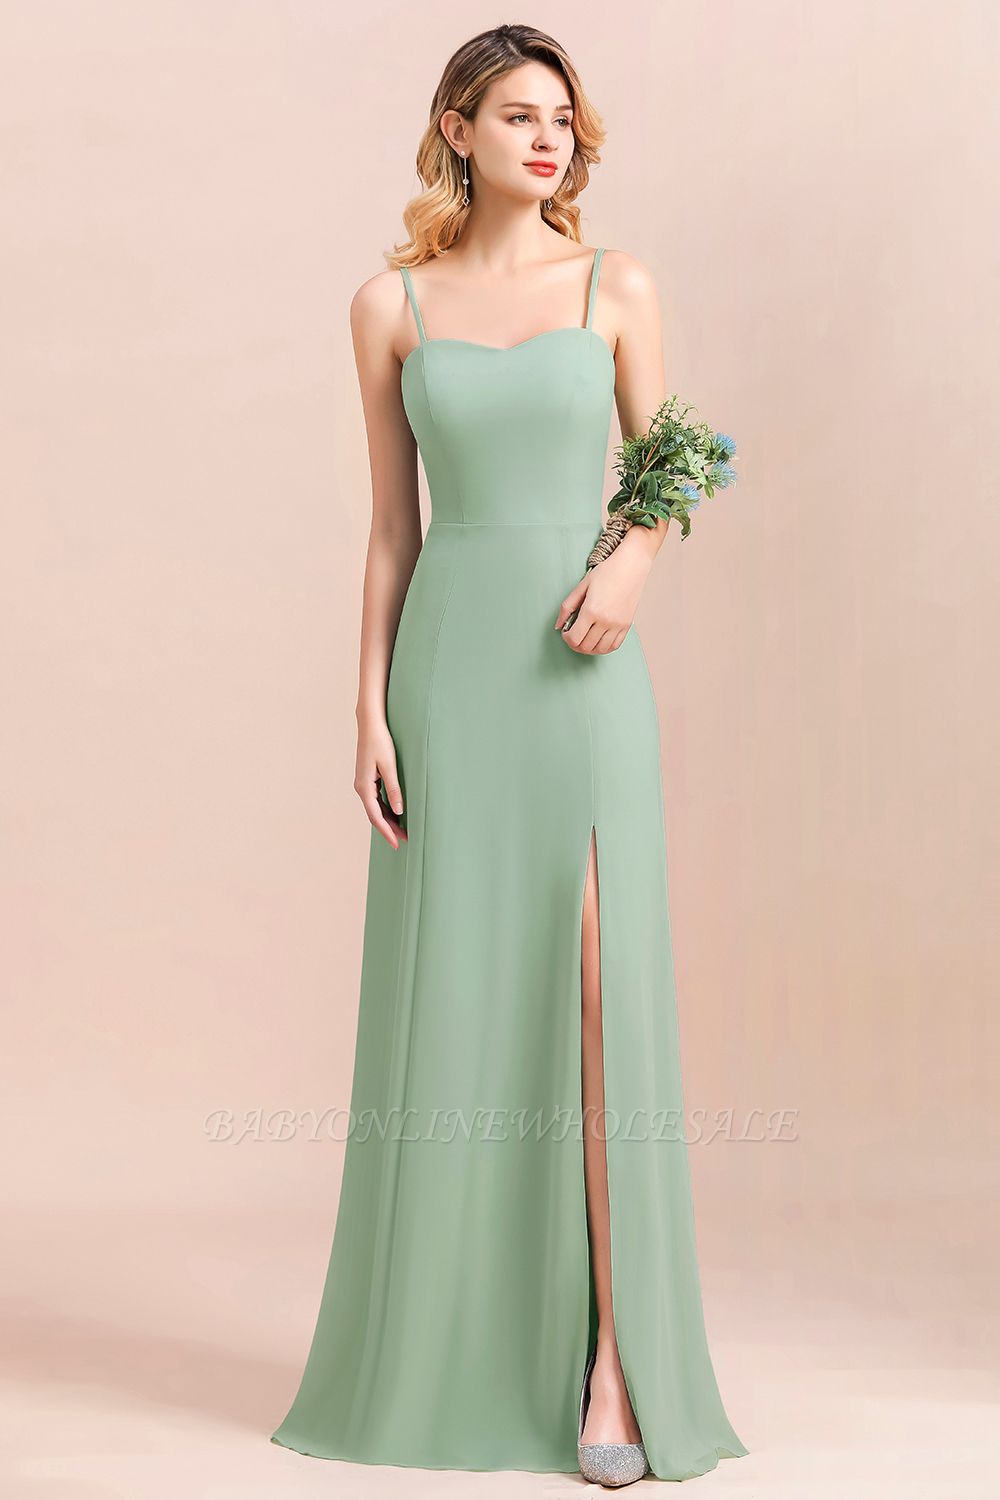 Romantisches Schatz-Salbei-Garten-BrautjungfernkleidSpaghetti-Trägern Langes Kleid für besondere Anlässe mit Seitenschlitz